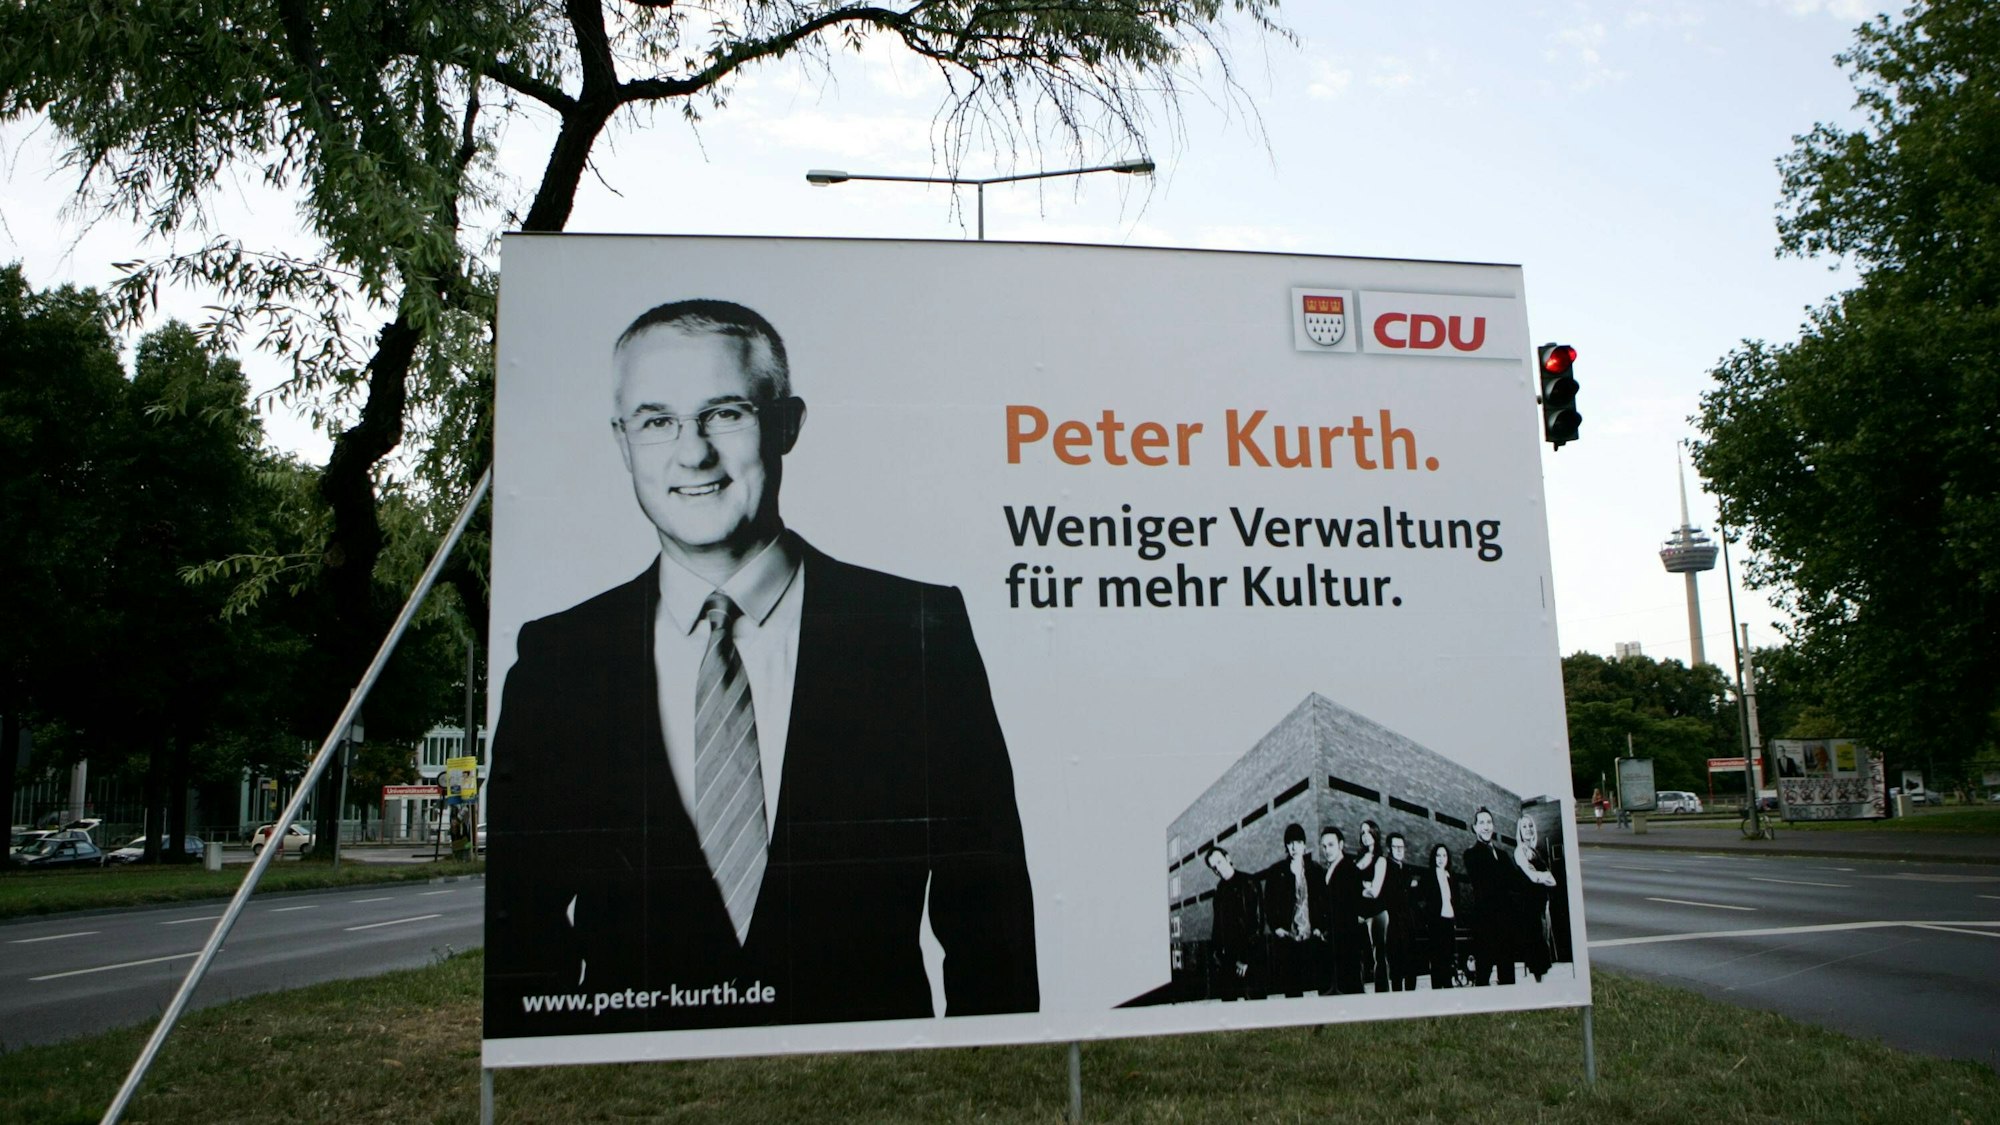 Oberbürgermeister-Wahl 2009 in Köln: CDU-Kandidat Peter Kurth unterlag Jürgen Rothers (SPD) deutlich. (Archivbild)